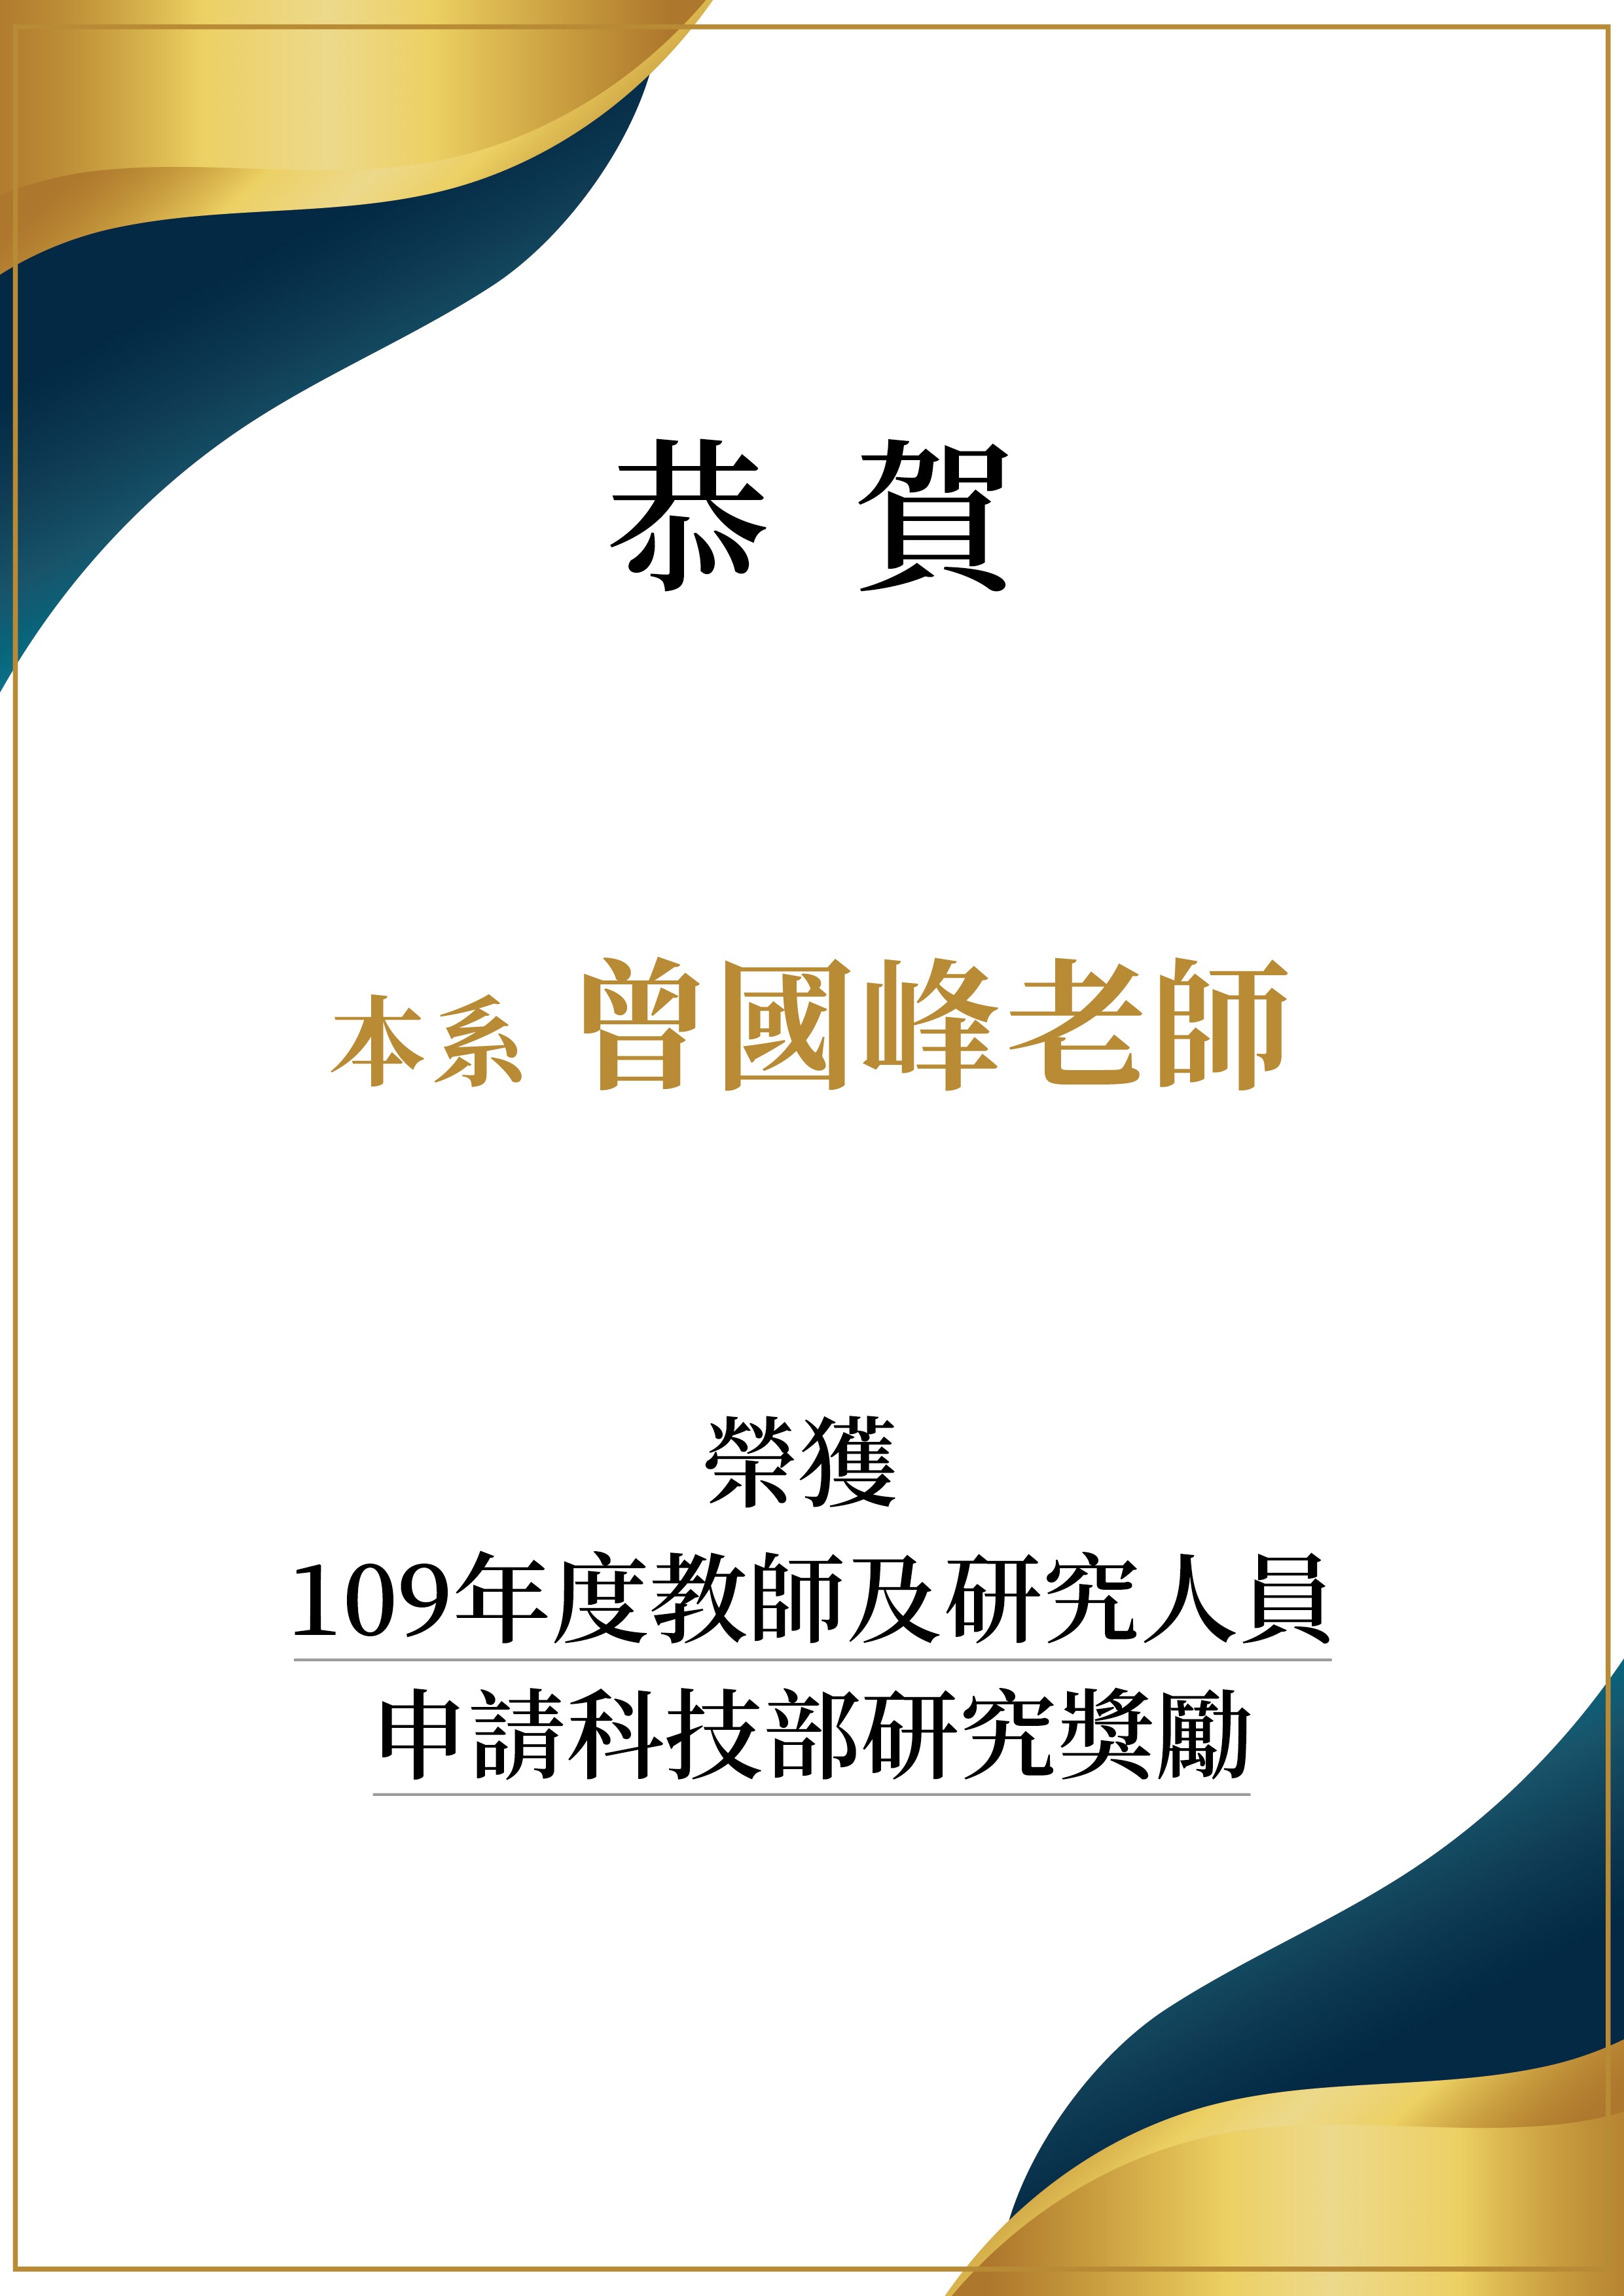 恭喜本系曾國峰副教授獲本校109年度科技部研究獎勵